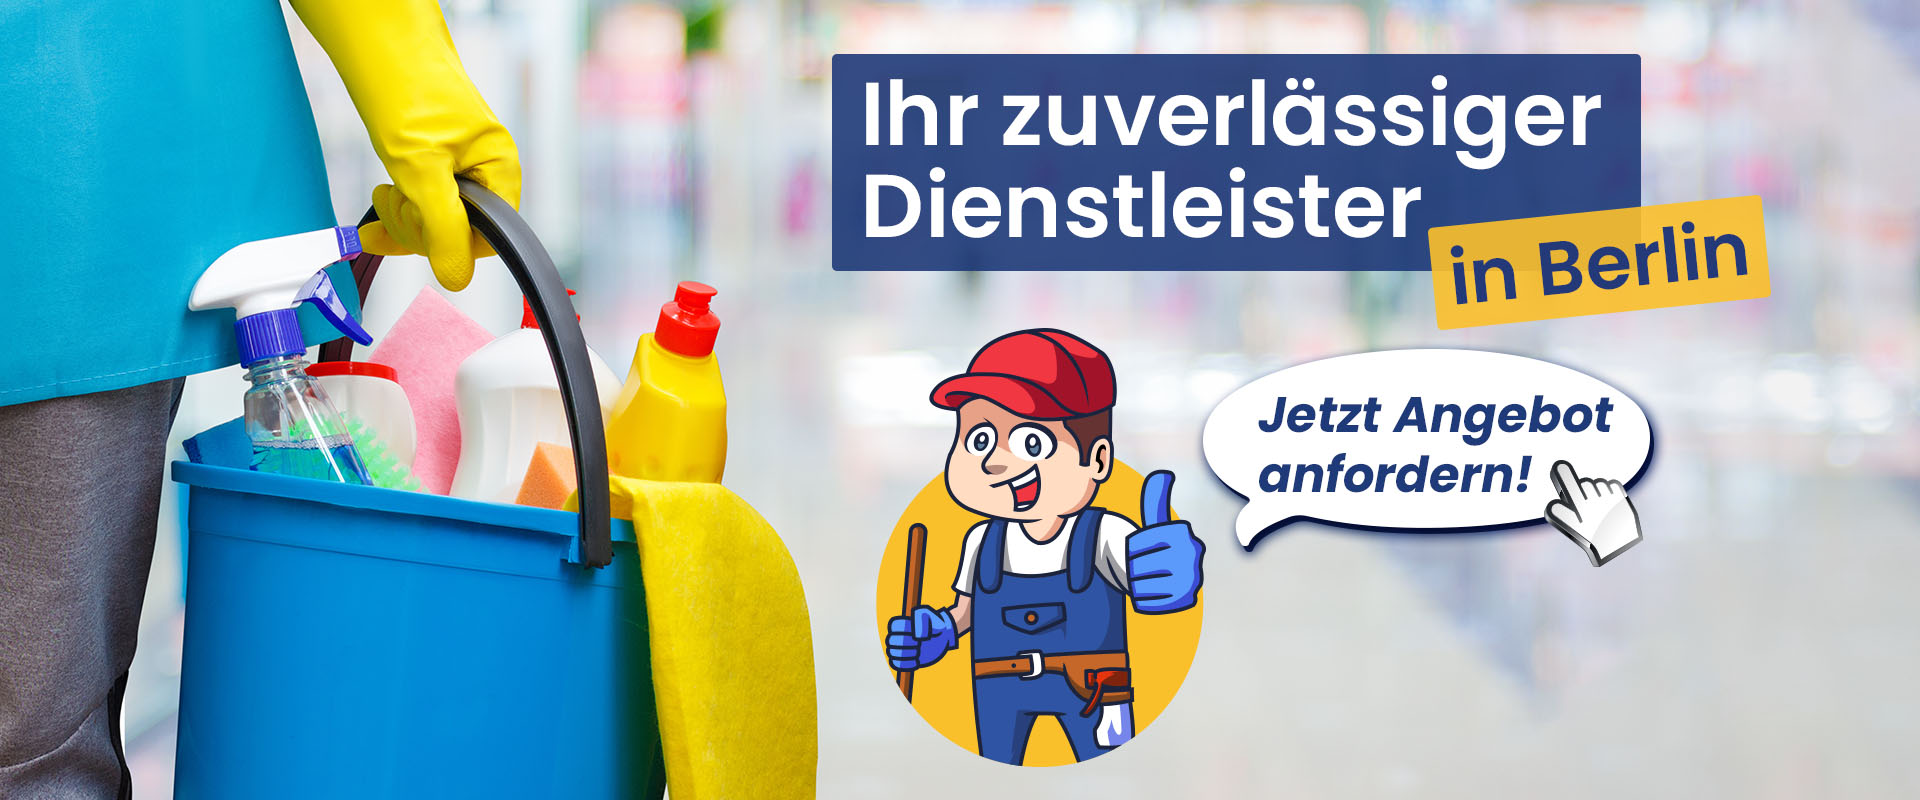 kotte-dienstleistungen-reinigungsarbeiten-putzdienst-berlin-heroshot-desktop